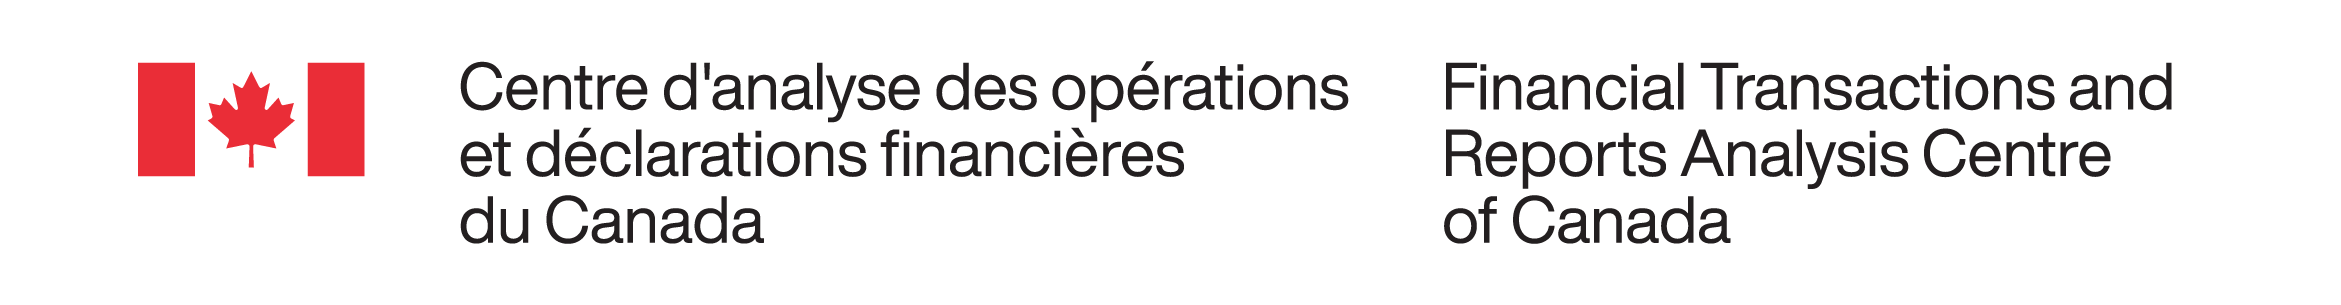 Signature organisationnelle du Centre d’analyse des opérations et déclarations financières du Canada (signature avec drapeau sur 3 lignes) dans ses couleurs standards (lettres noires, symbole du drapeau rouge du PFIM).